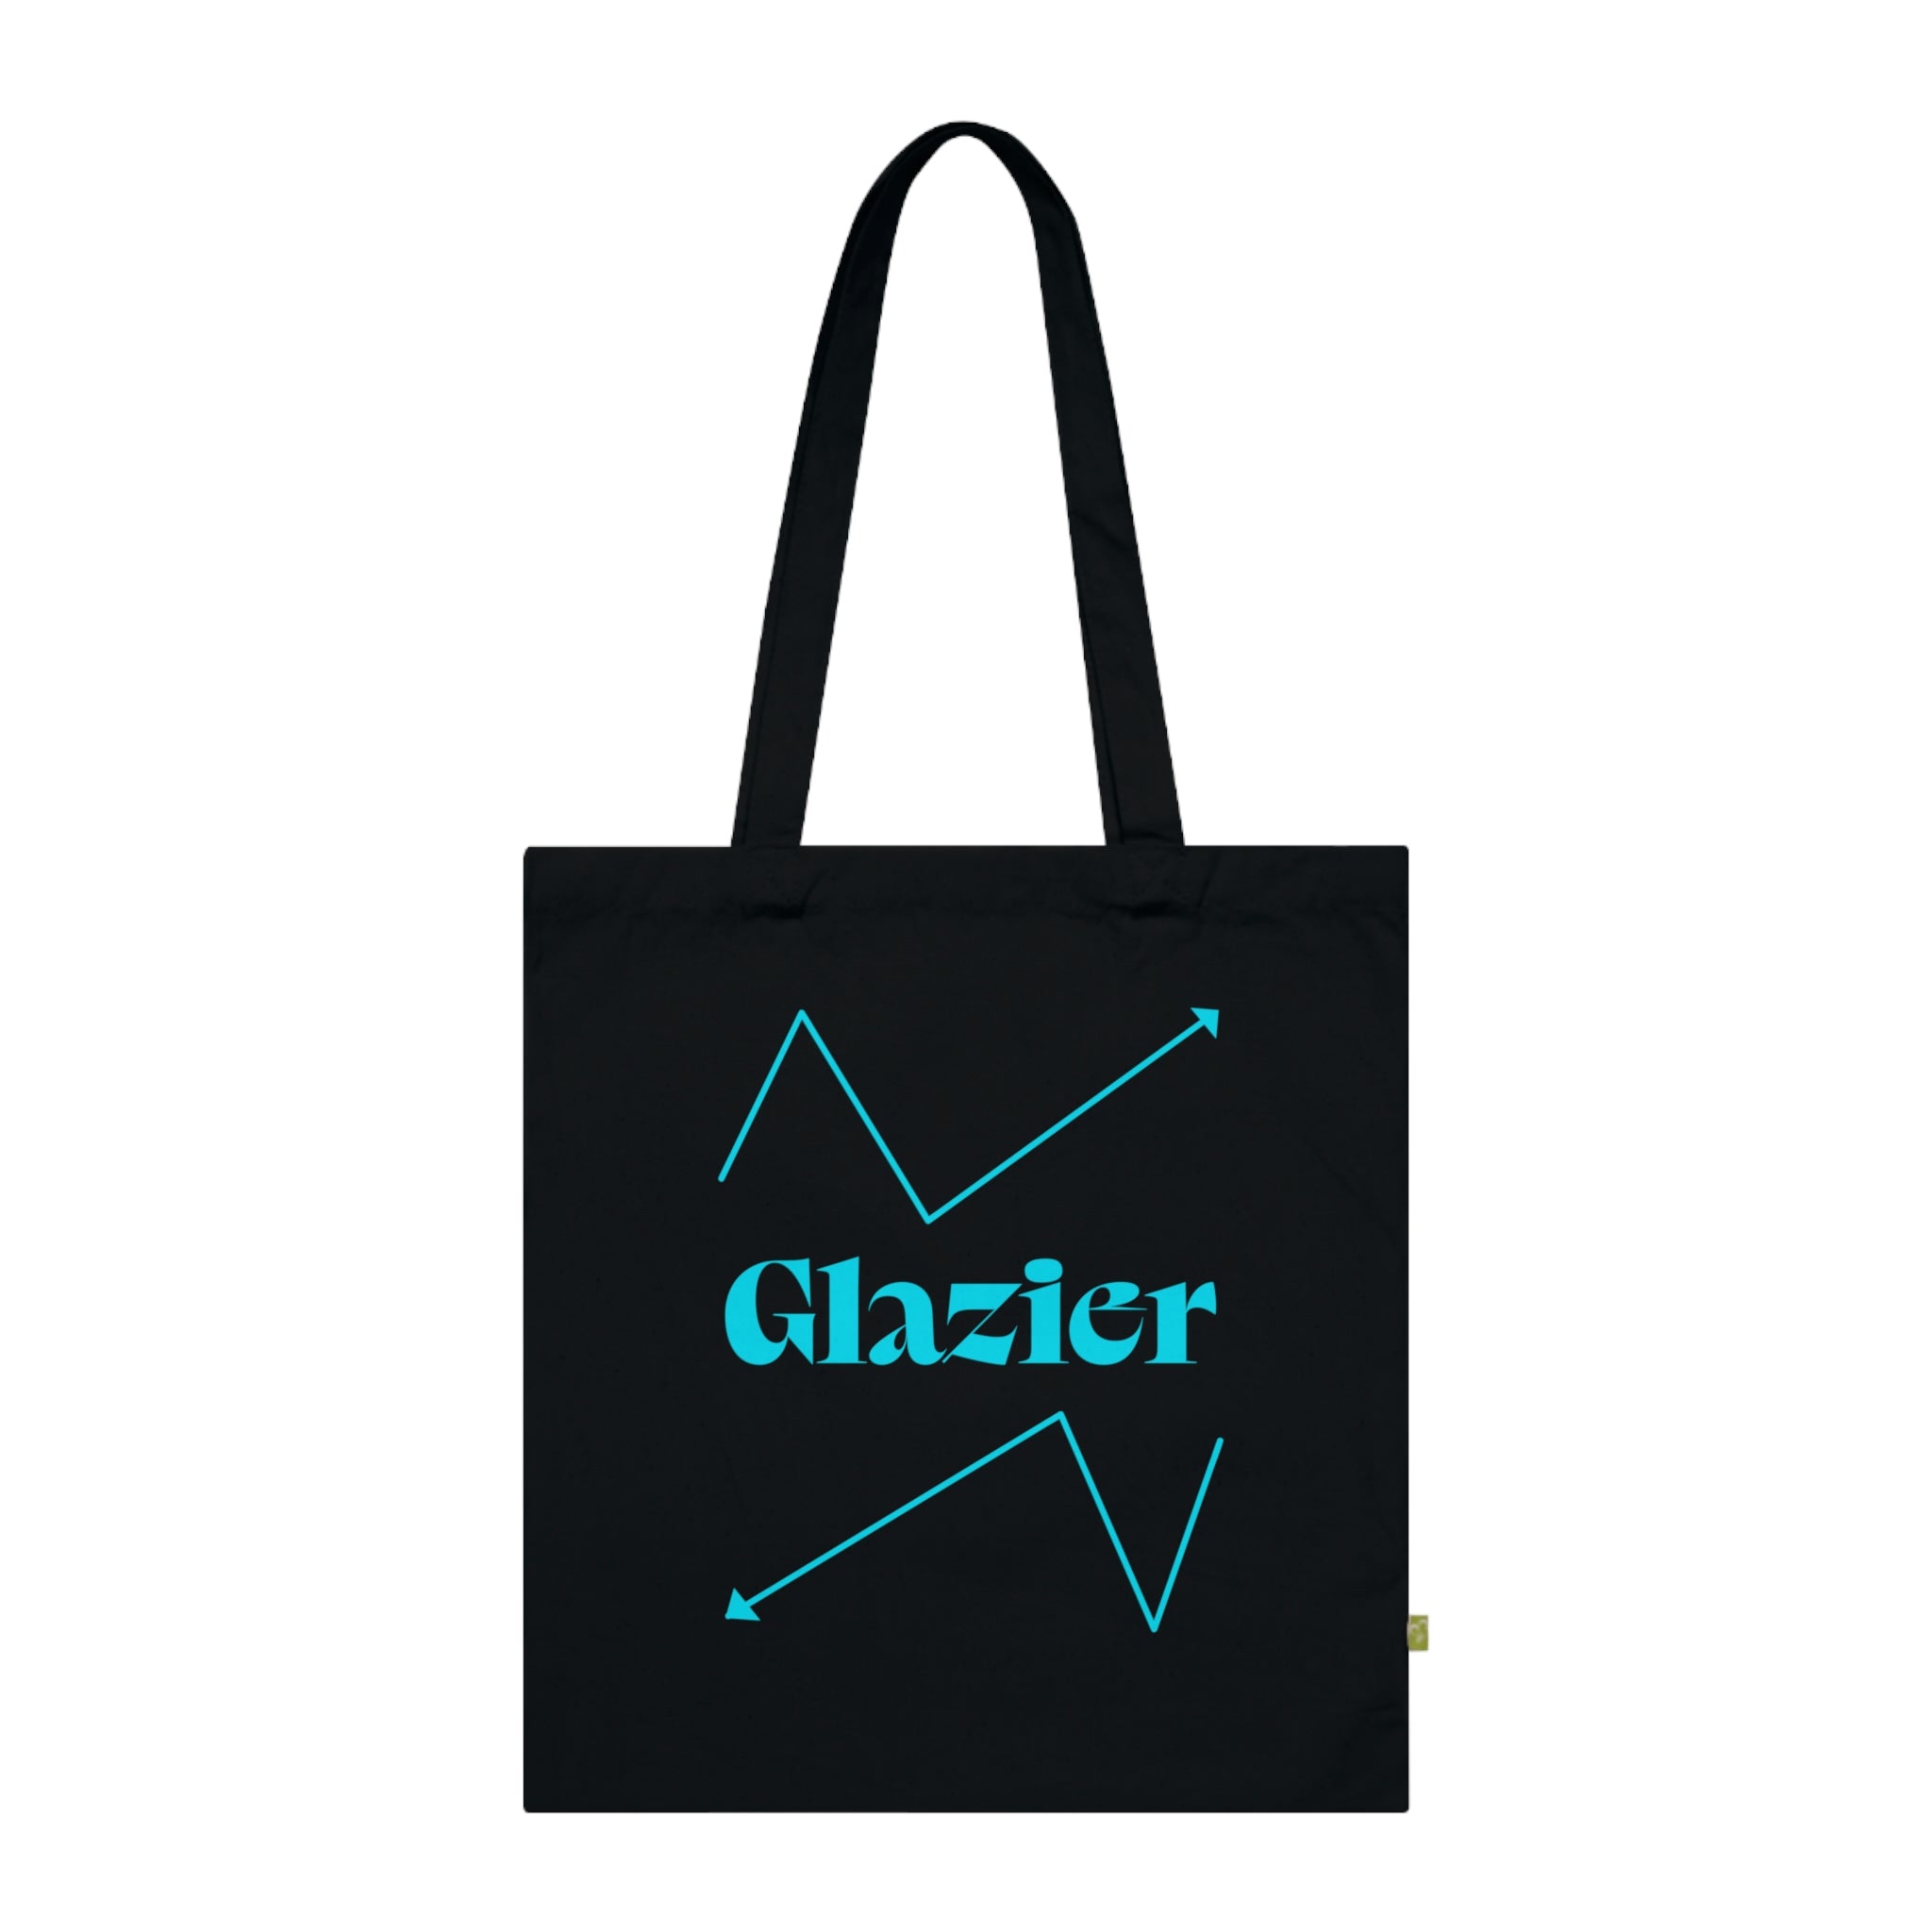 Glazier Tote Bag